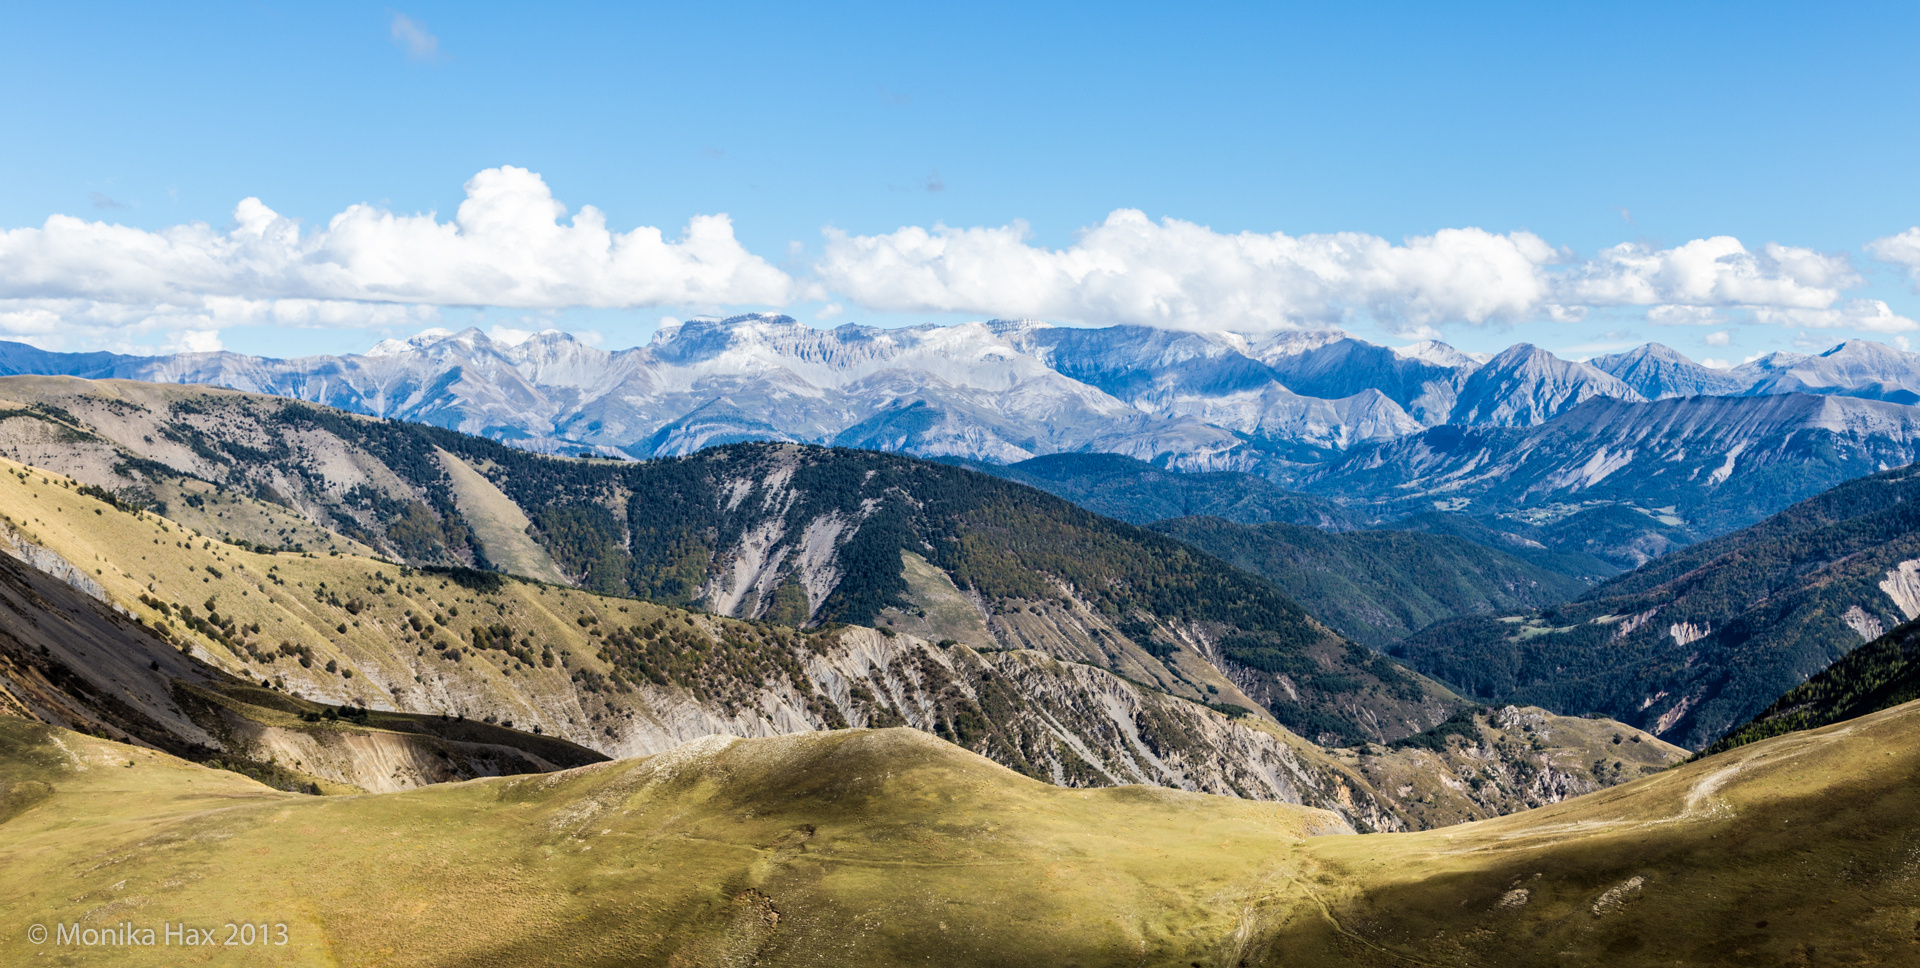 Les Monges - Blick auf die französischen Alpen